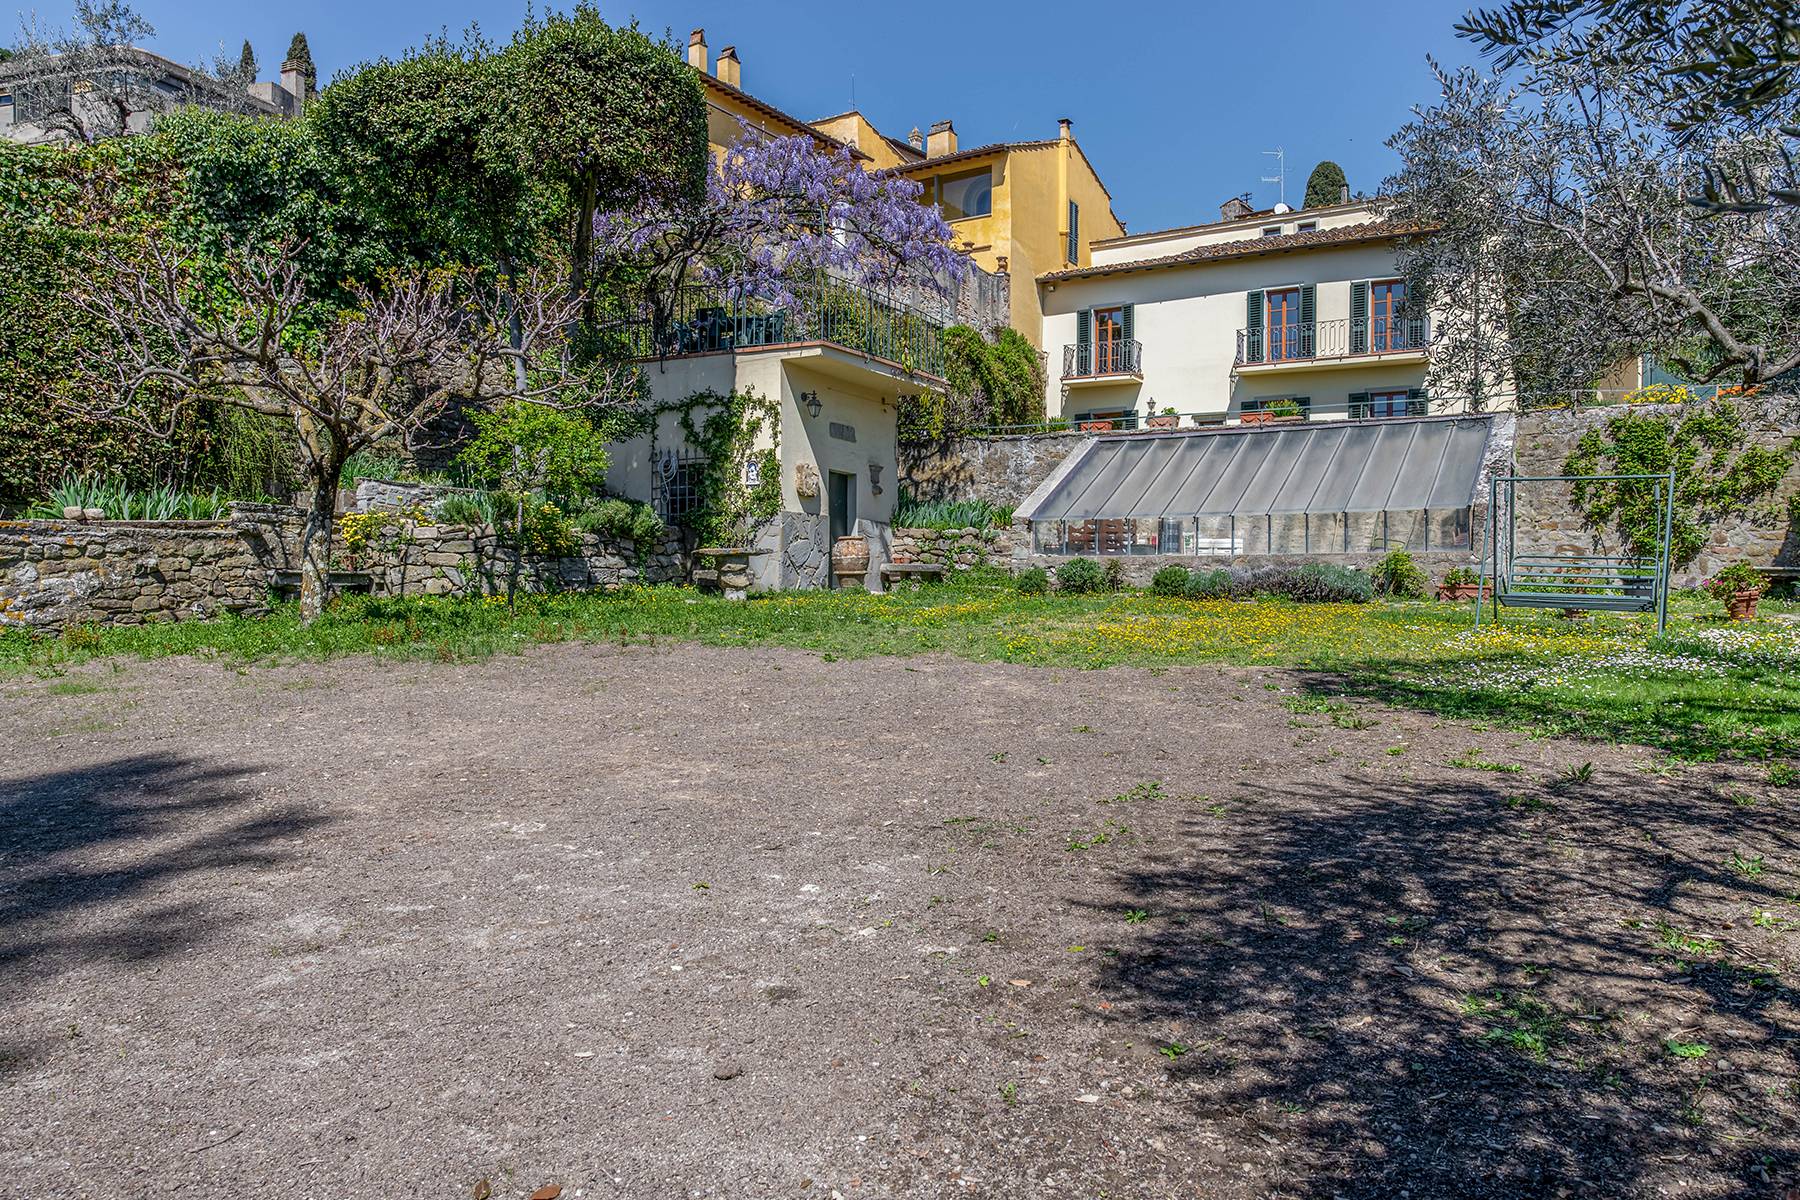 Casa indipendente in Vendita a Fiesole: 5 locali, 450 mq - Foto 16